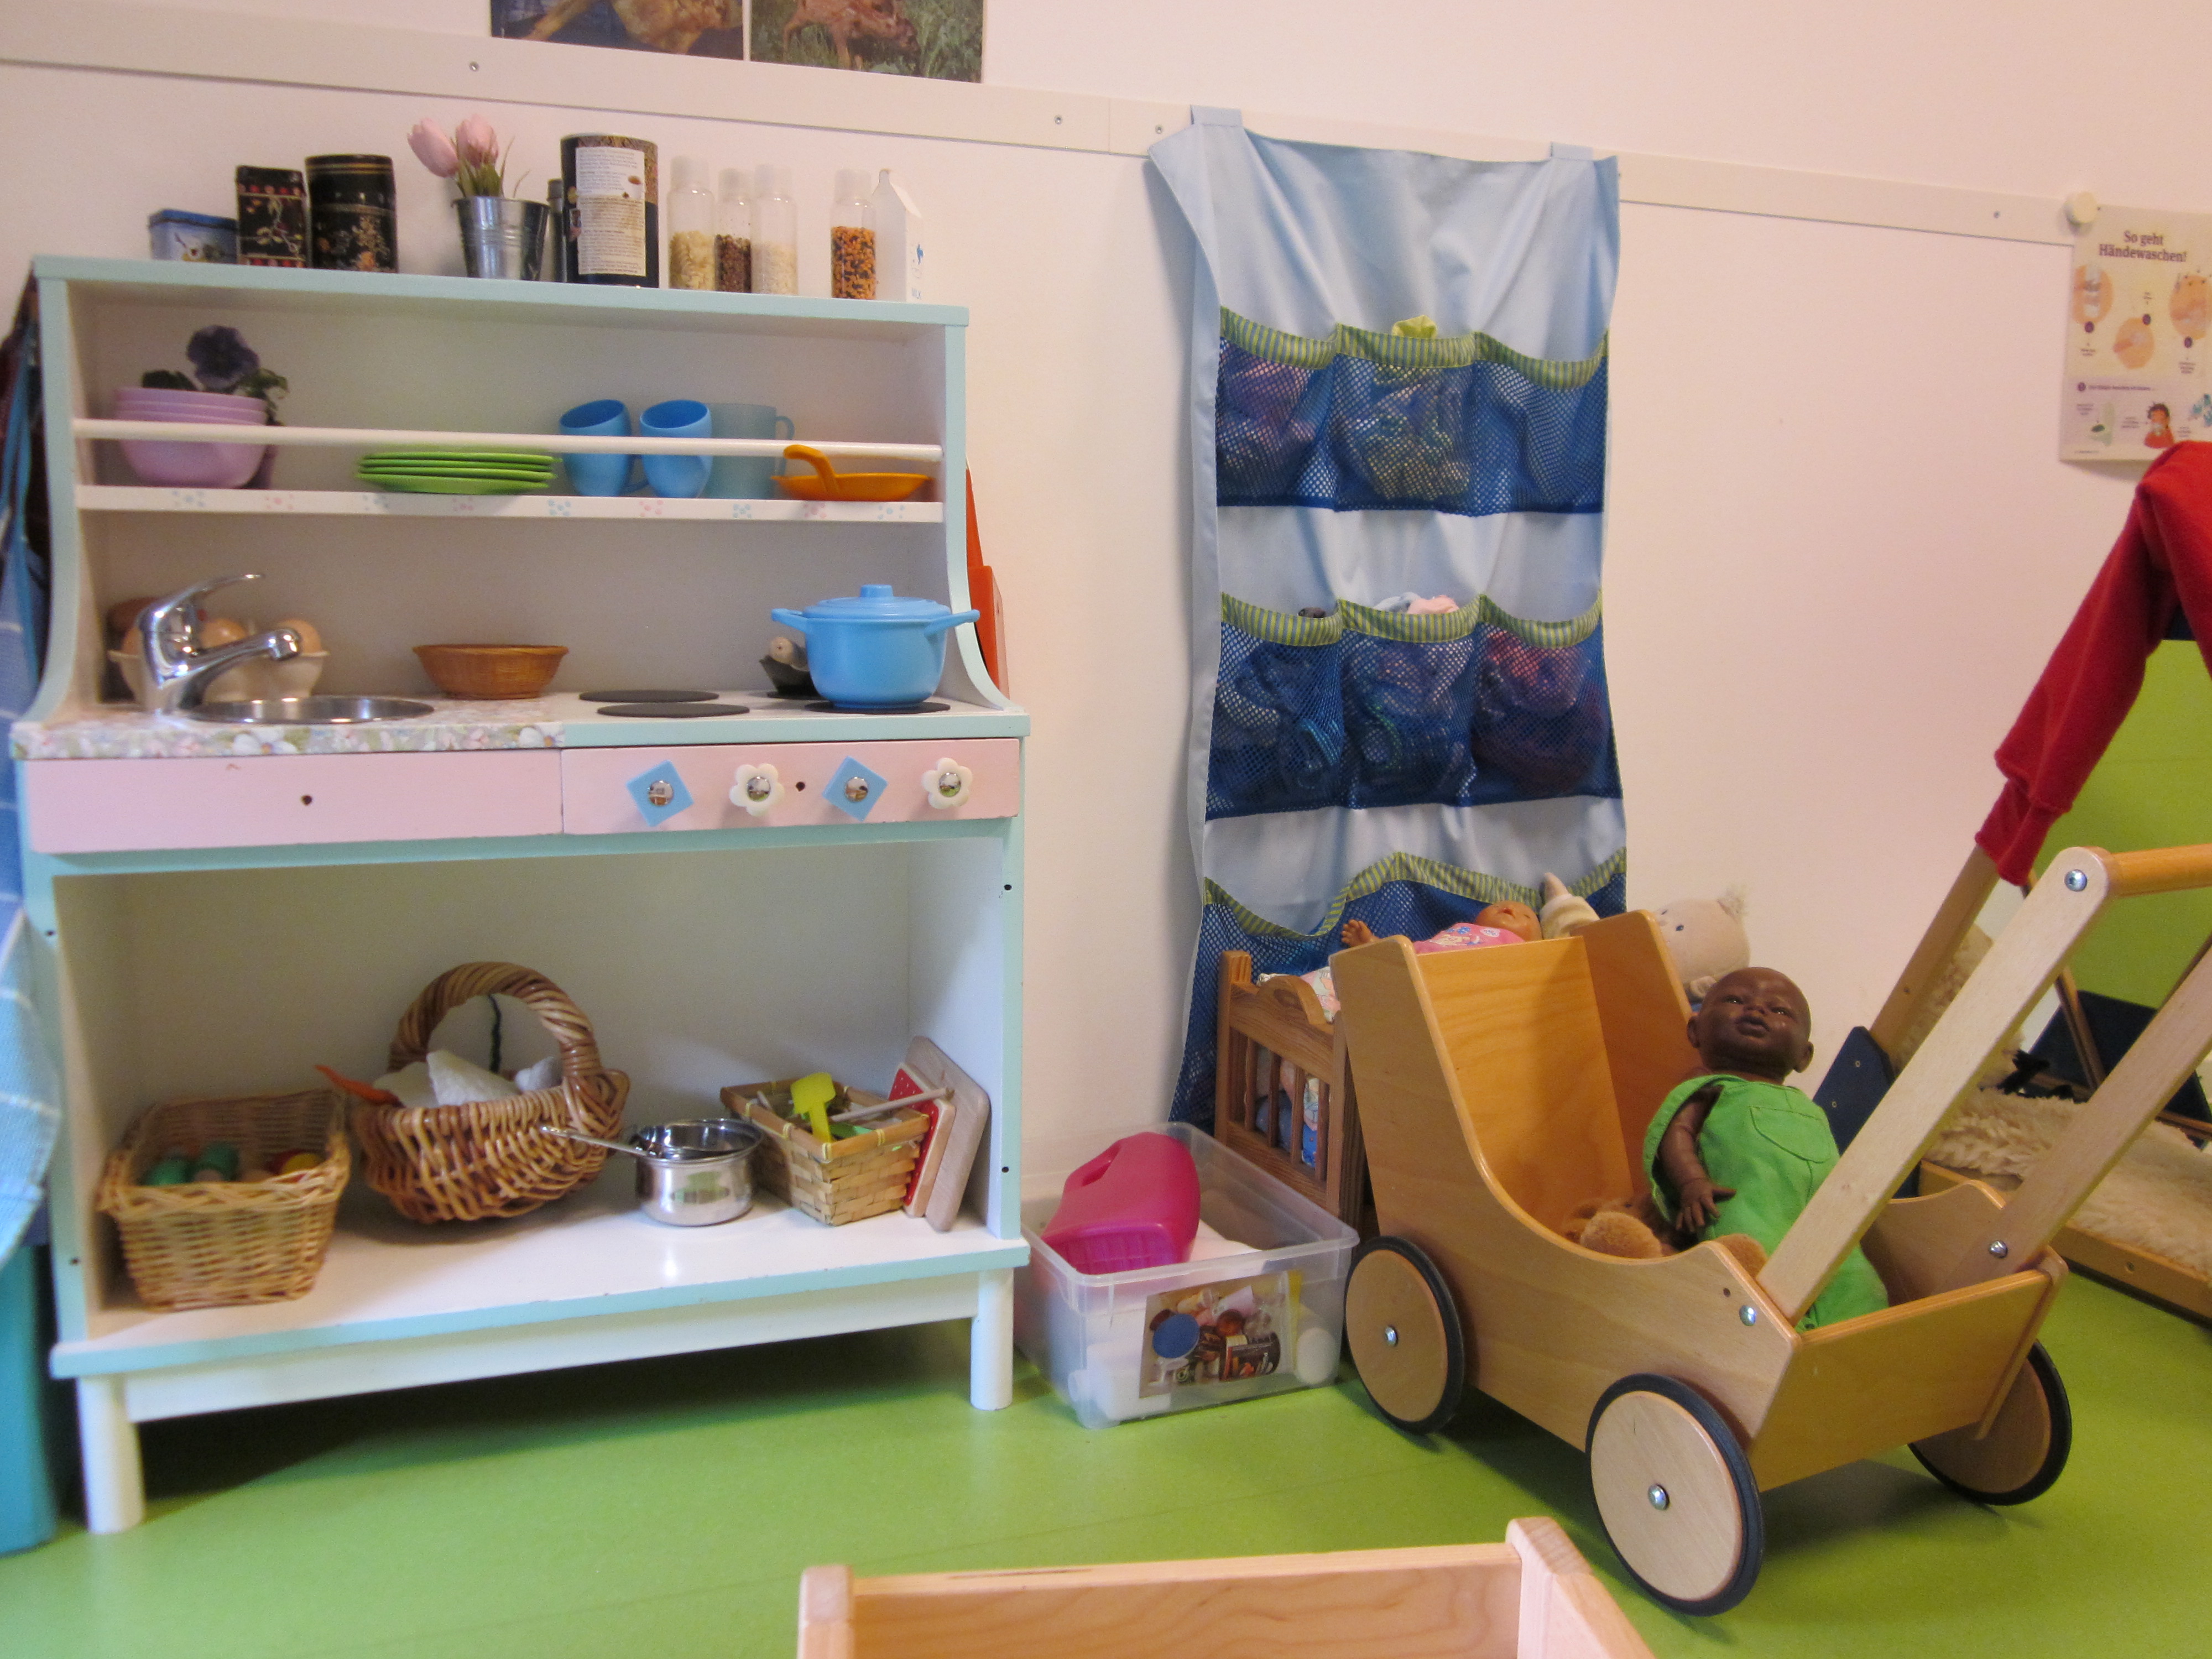 Auf dem Bild ist eine Kinderküche und daneben ein Puppenwagen zu sehen.